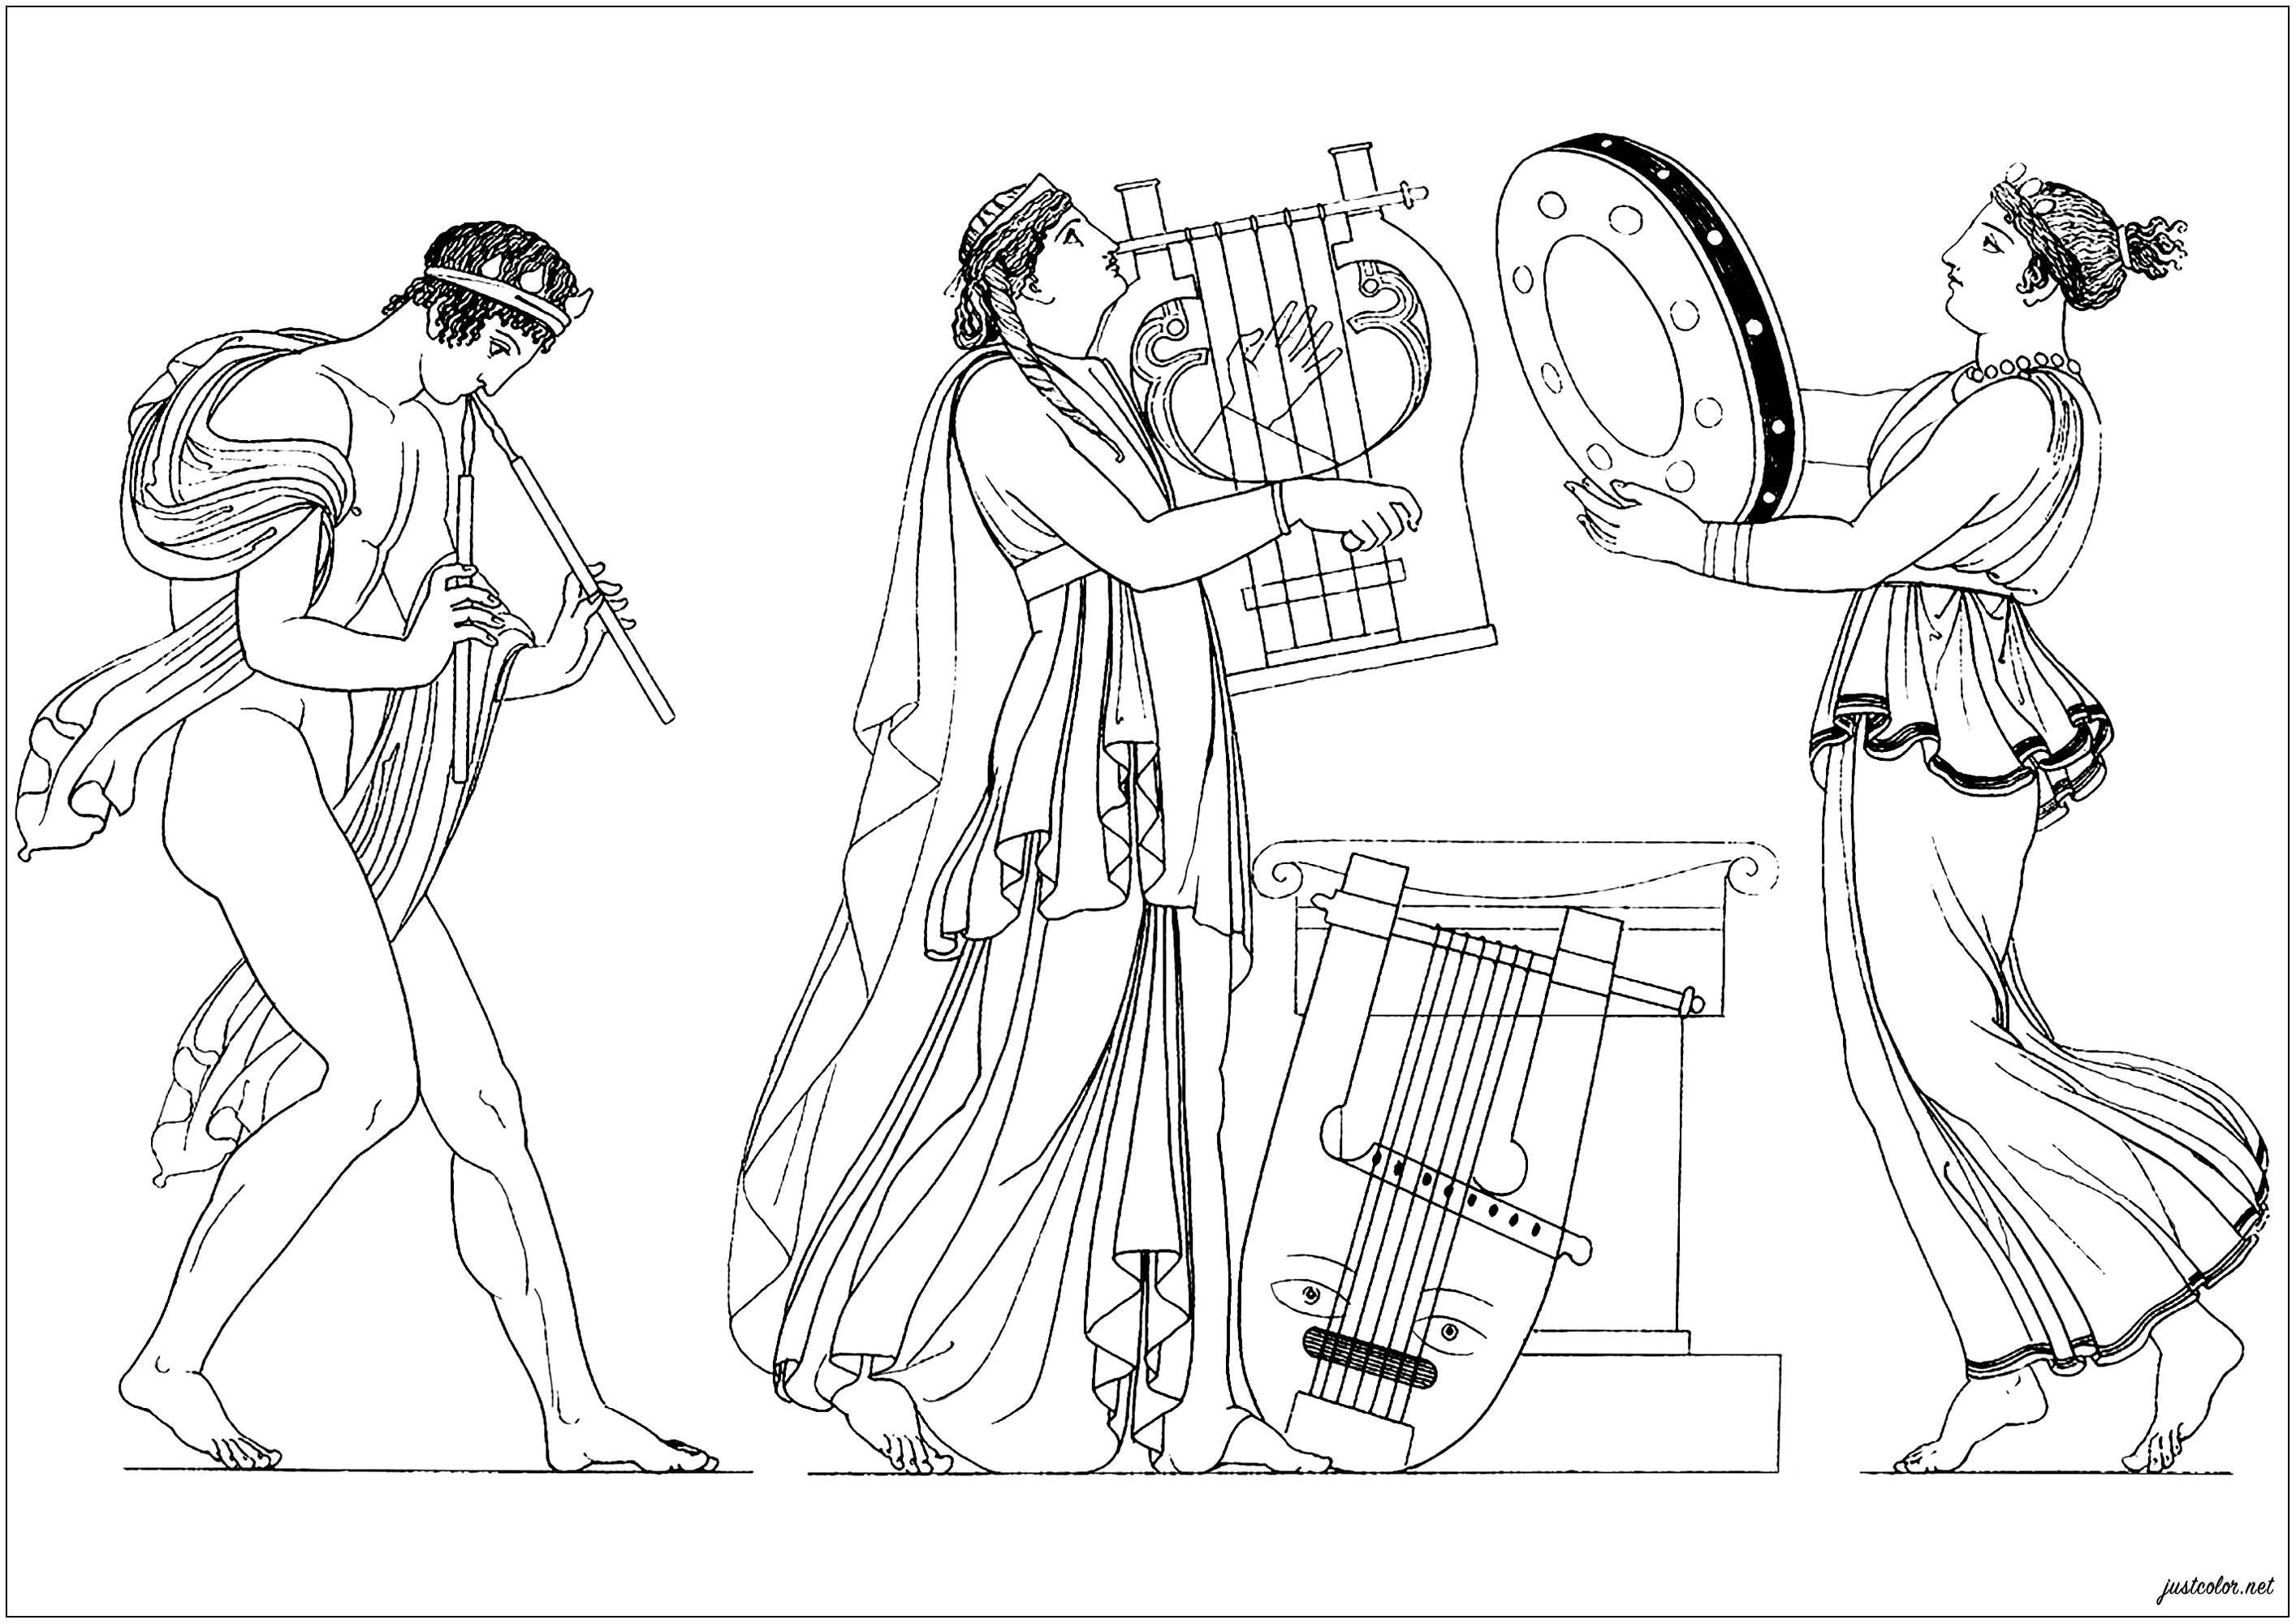 Antike griechische Musiker. Eine Malvorlage basierend auf einer Illustration aus 'The Egyptian, Grecian and Roman costumes' von Thomas Baxter (1782-1821)